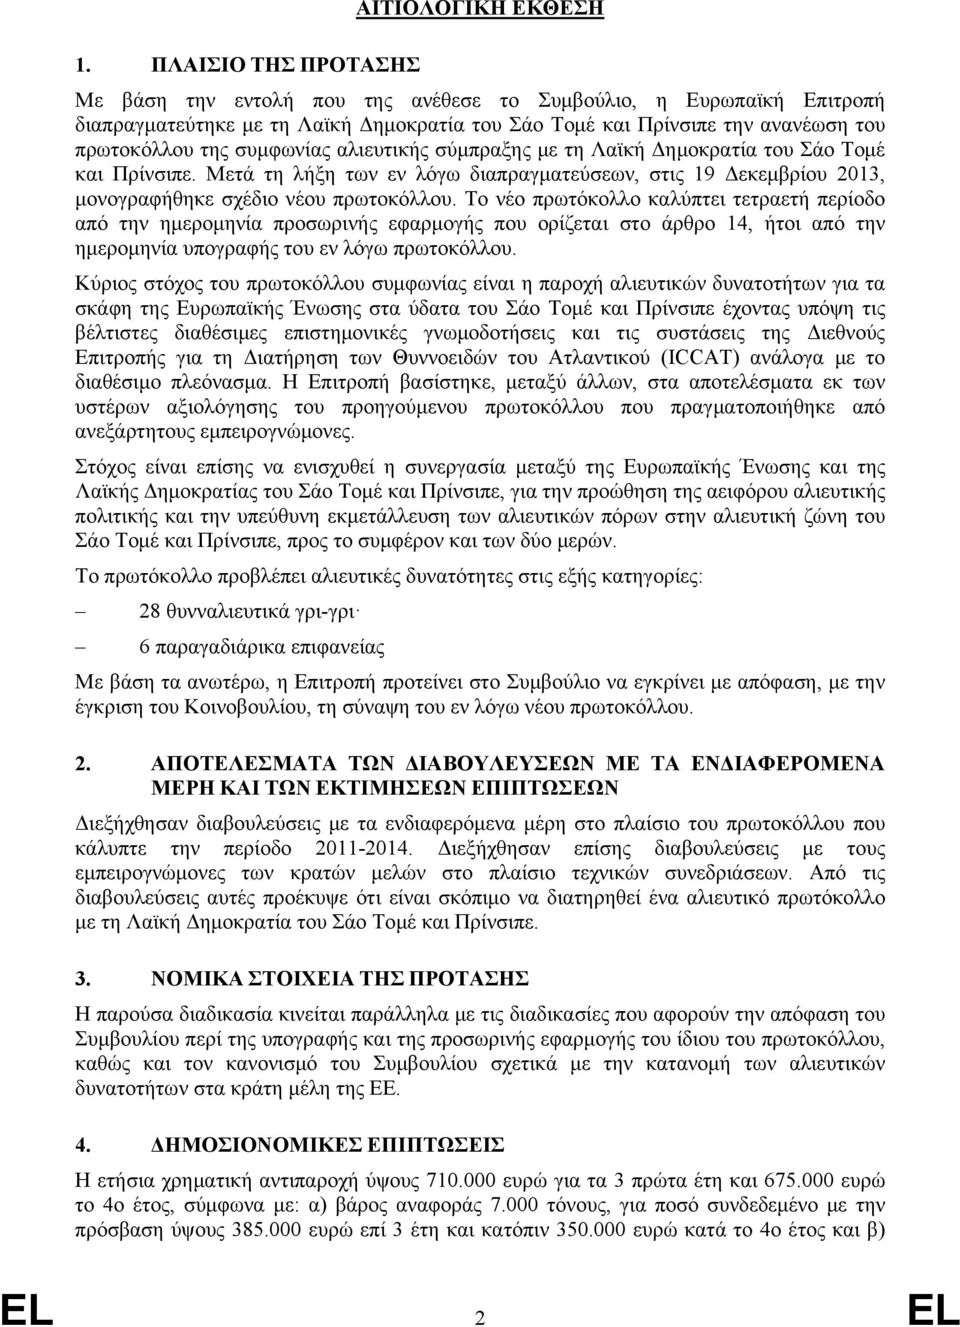 αλιευτικής σύμπραξης με τη Λαϊκή Δημοκρατία του Σάο Τομέ και Πρίνσιπε. Μετά τη λήξη των εν λόγω διαπραγματεύσεων, στις 19 Δεκεμβρίου 2013, μονογραφήθηκε σχέδιο νέου πρωτοκόλλου.